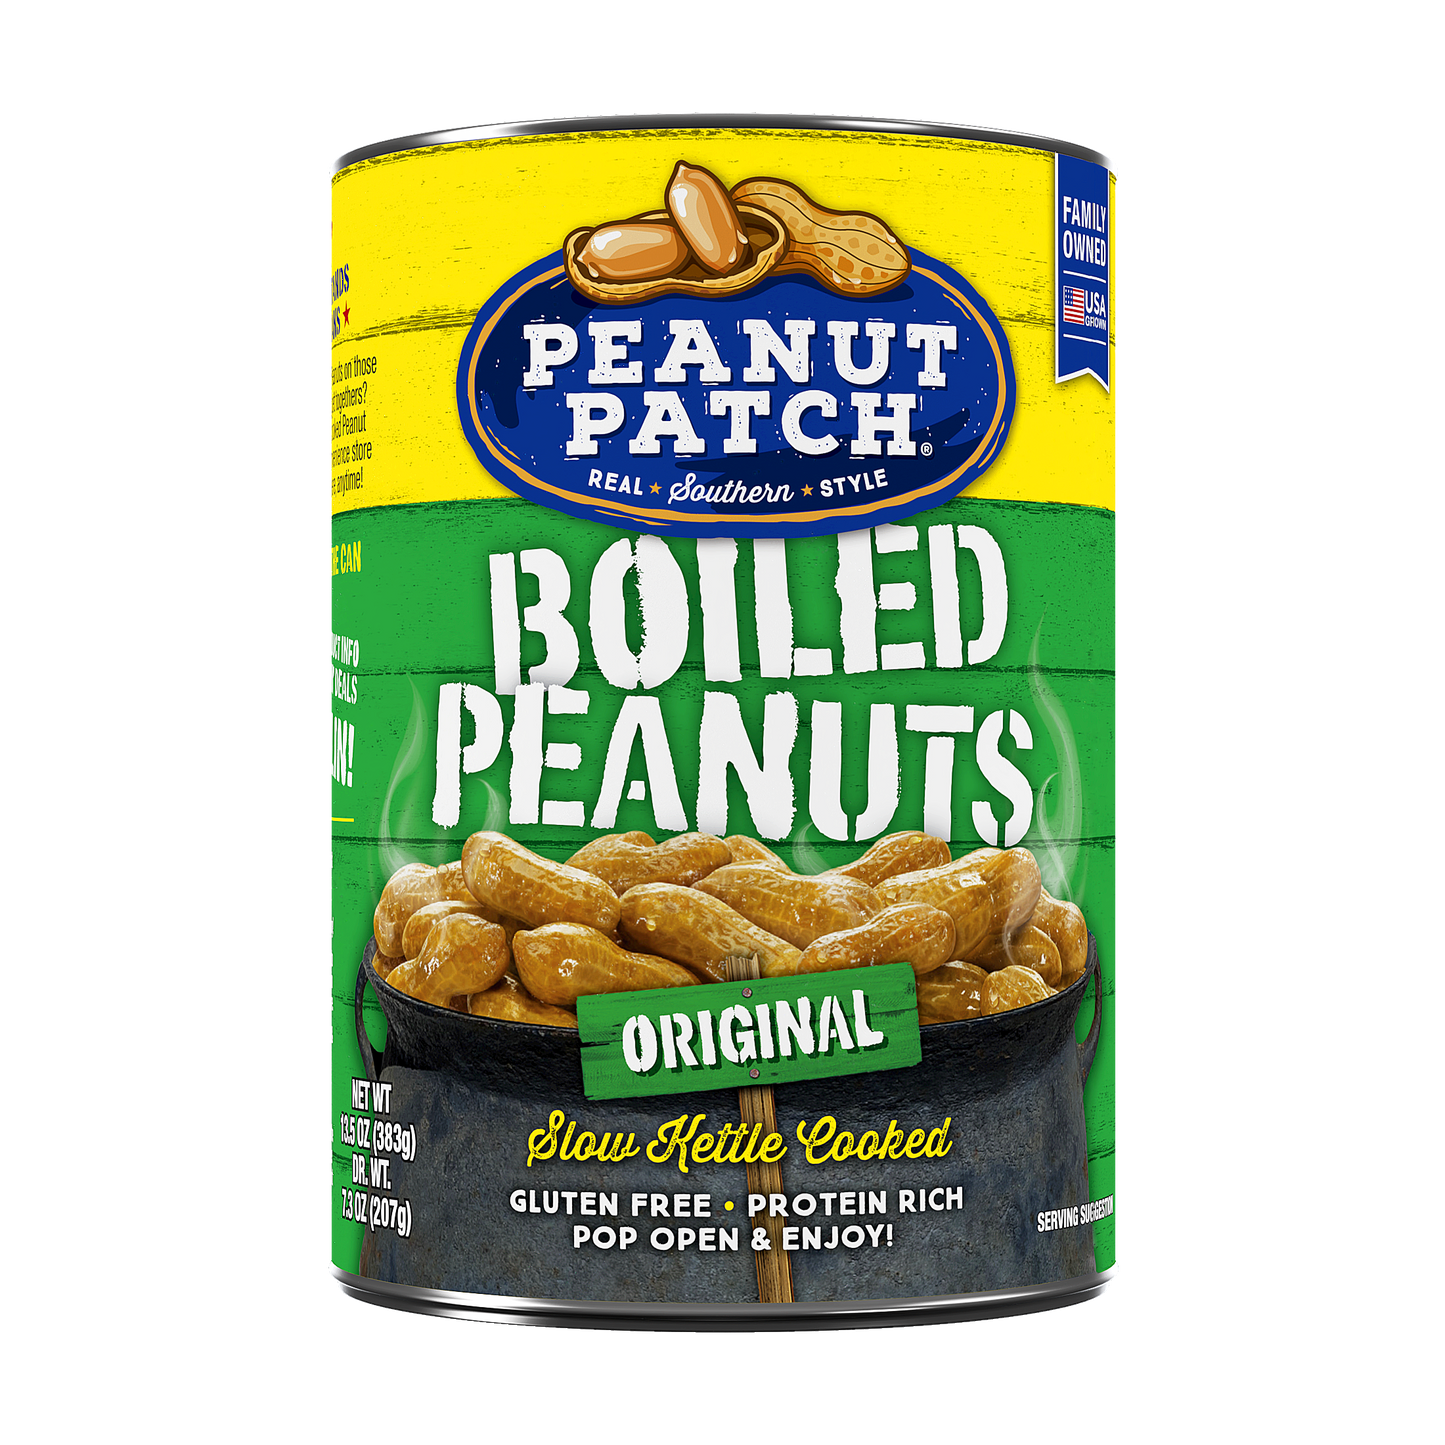 Original Boiled Peanuts (13.5oz, 12 Pack)